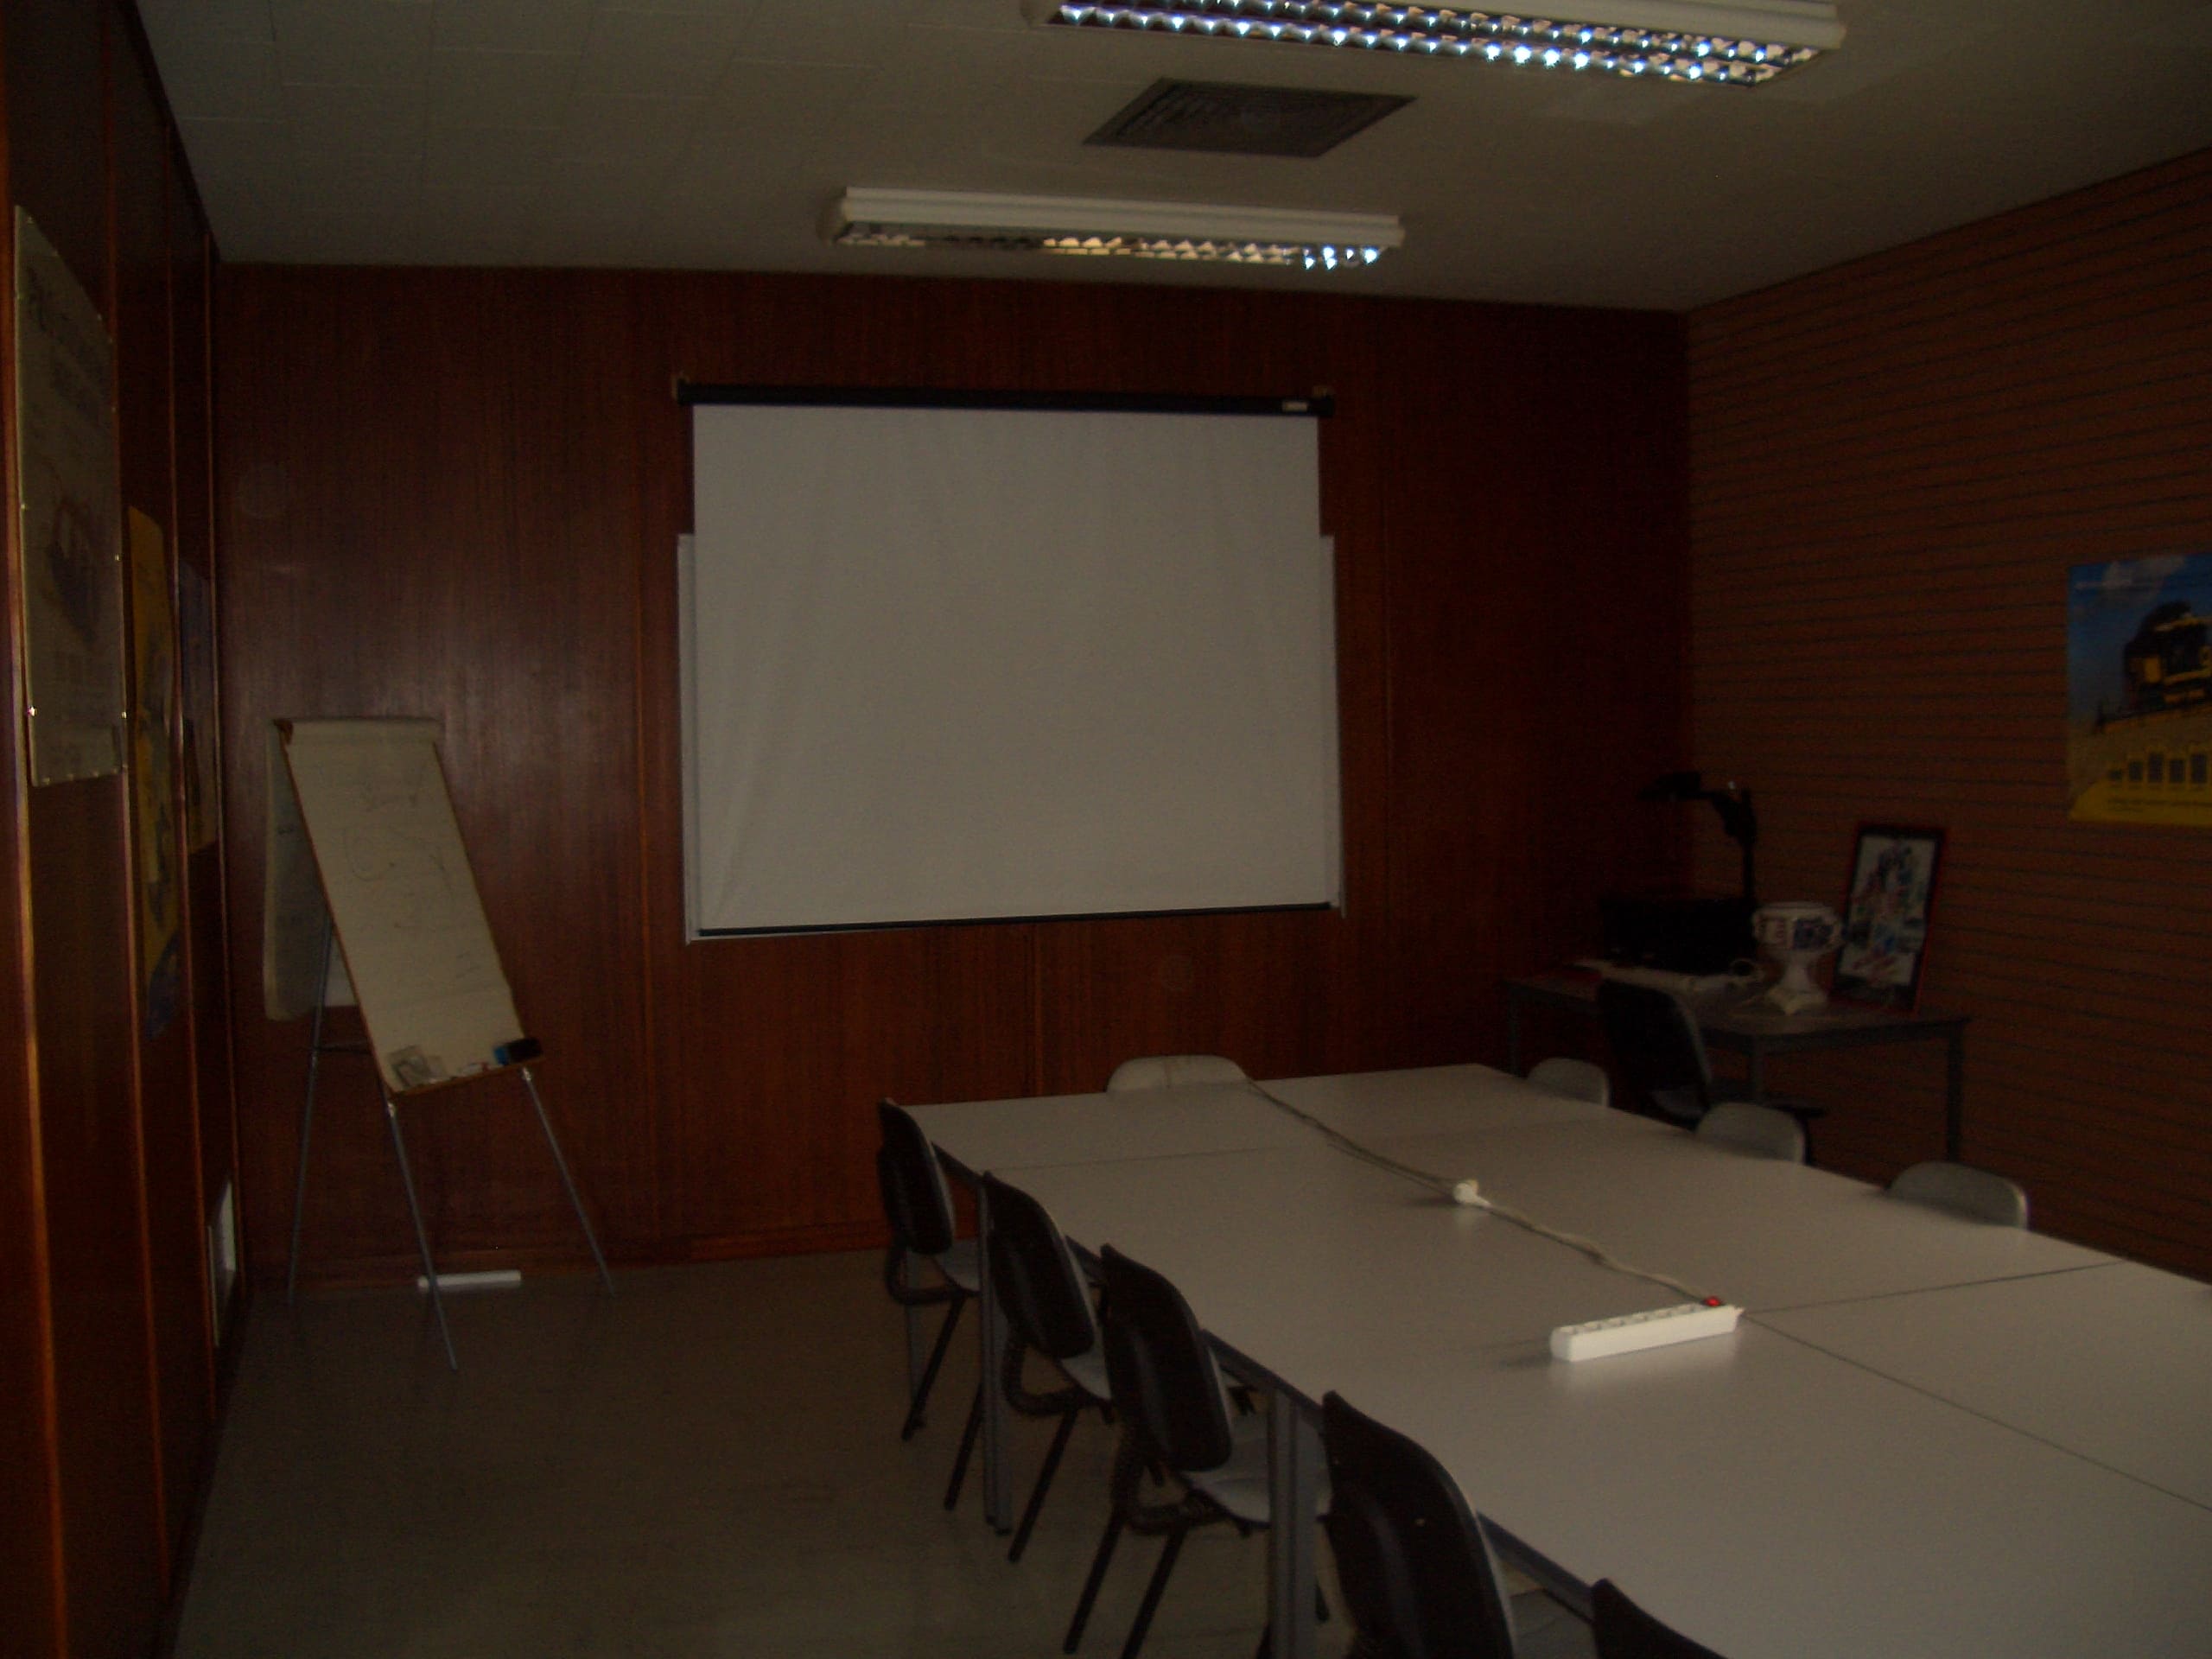 Salle de réunion dans les locaux du Groupe Lavail à Revel avant le début des travaux de rénovation